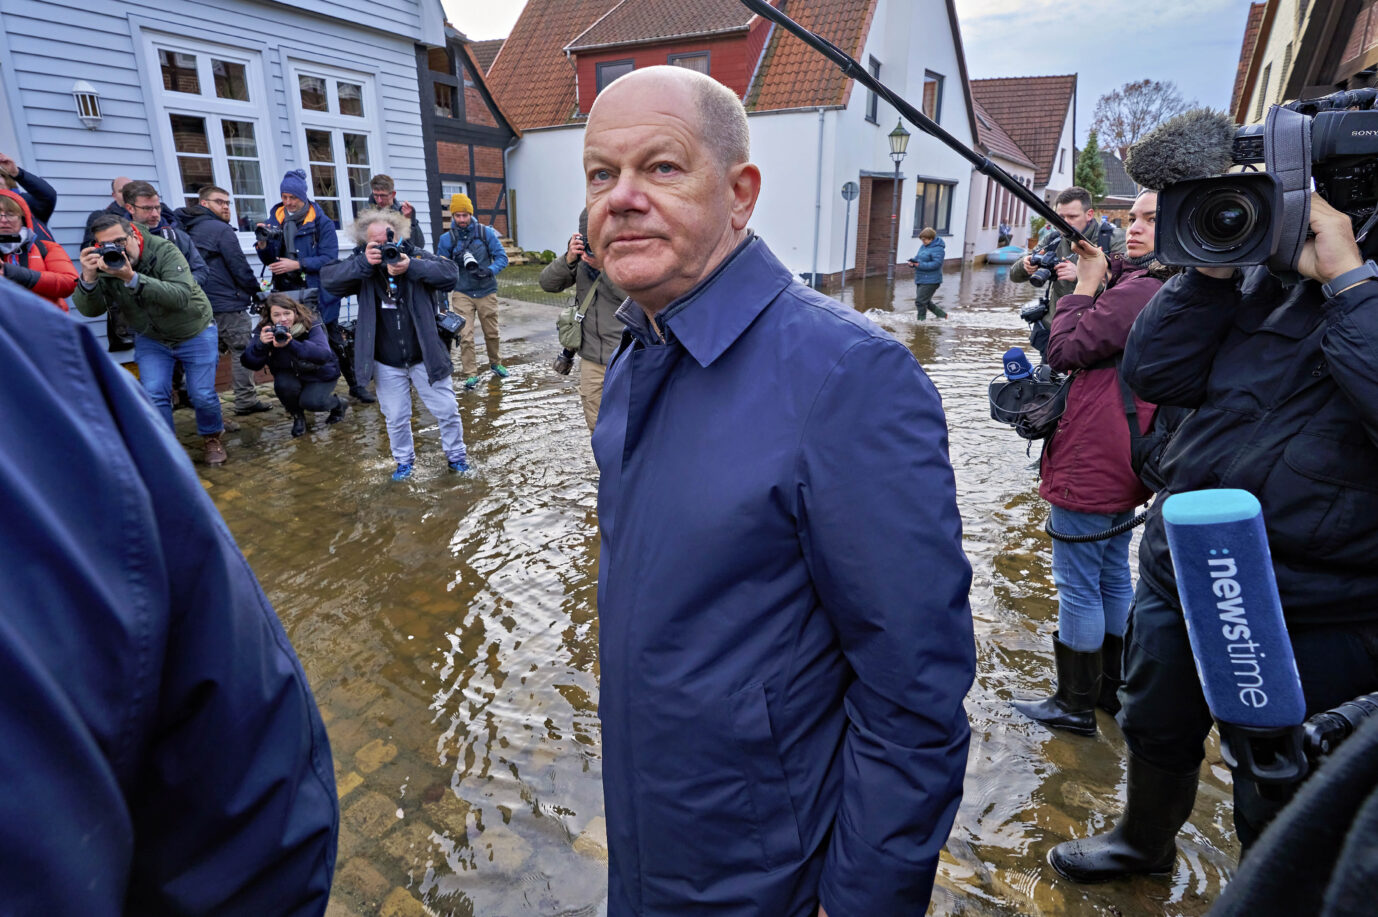 Bundeskanzler Olaf Scholz (SPD) besuchte am Silvestertag Verden, das besonders vom Hochwasser betroffen ist. Reicht es für die Aussetzung der Schuldenbremse?